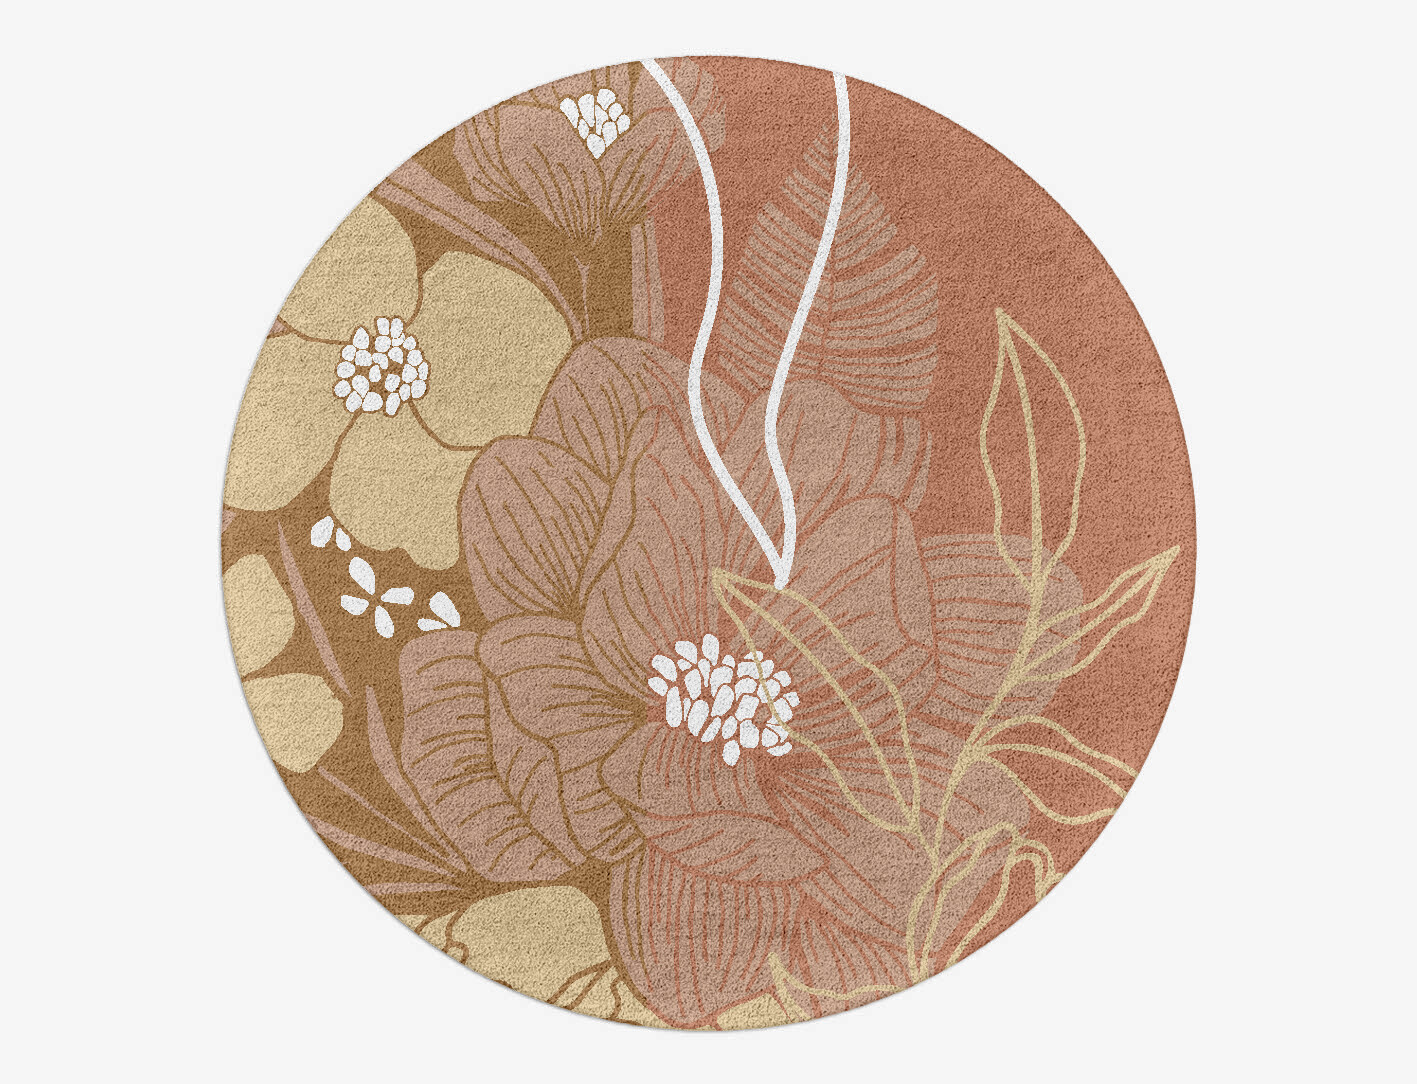 Oleander Field of Flowers Round Hand Tufted Pure Wool Custom Rug by Rug Artisan